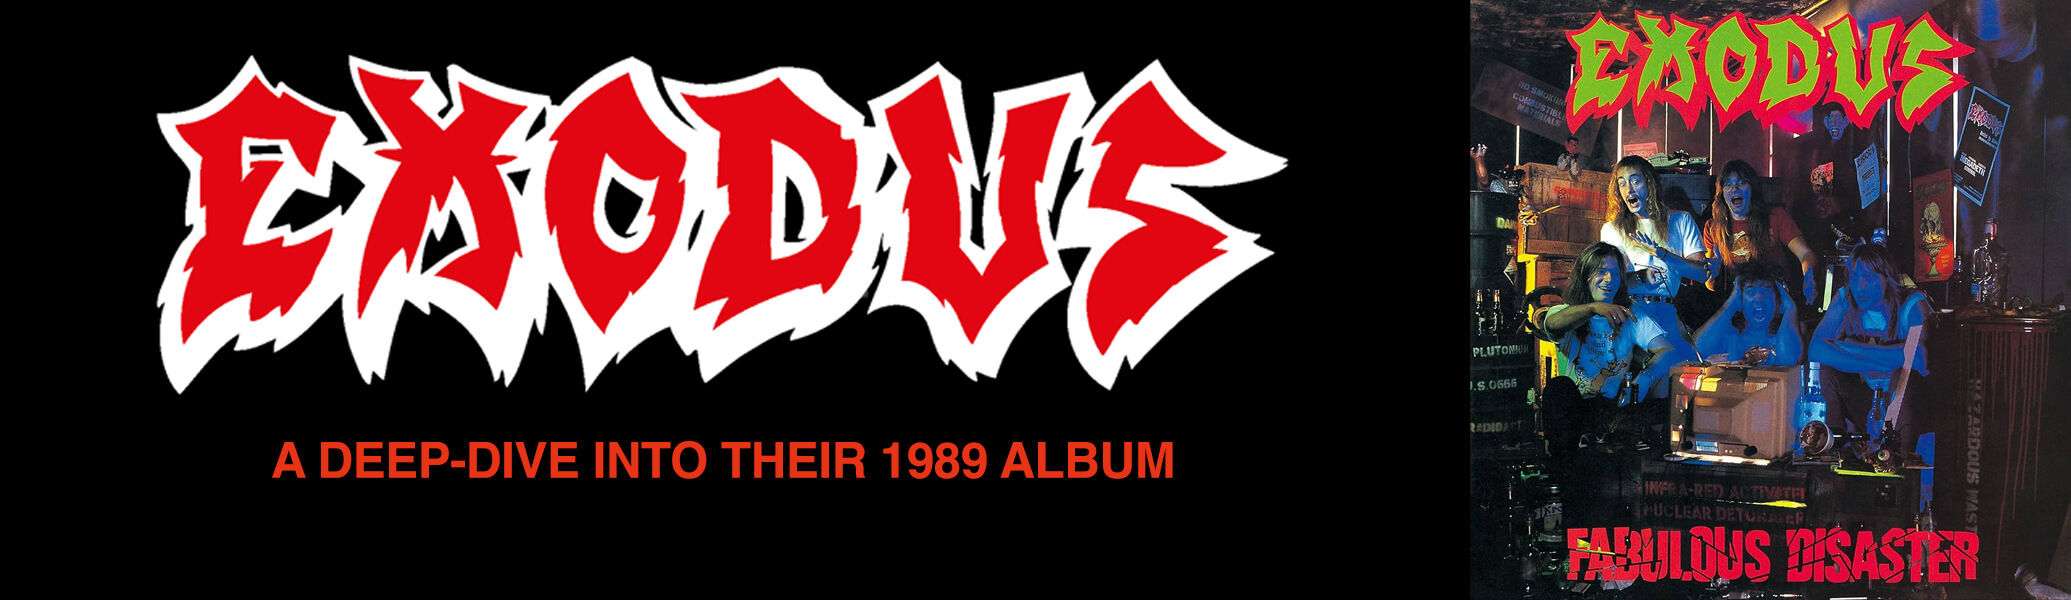 Exodus: A deep dive into their 1989 album